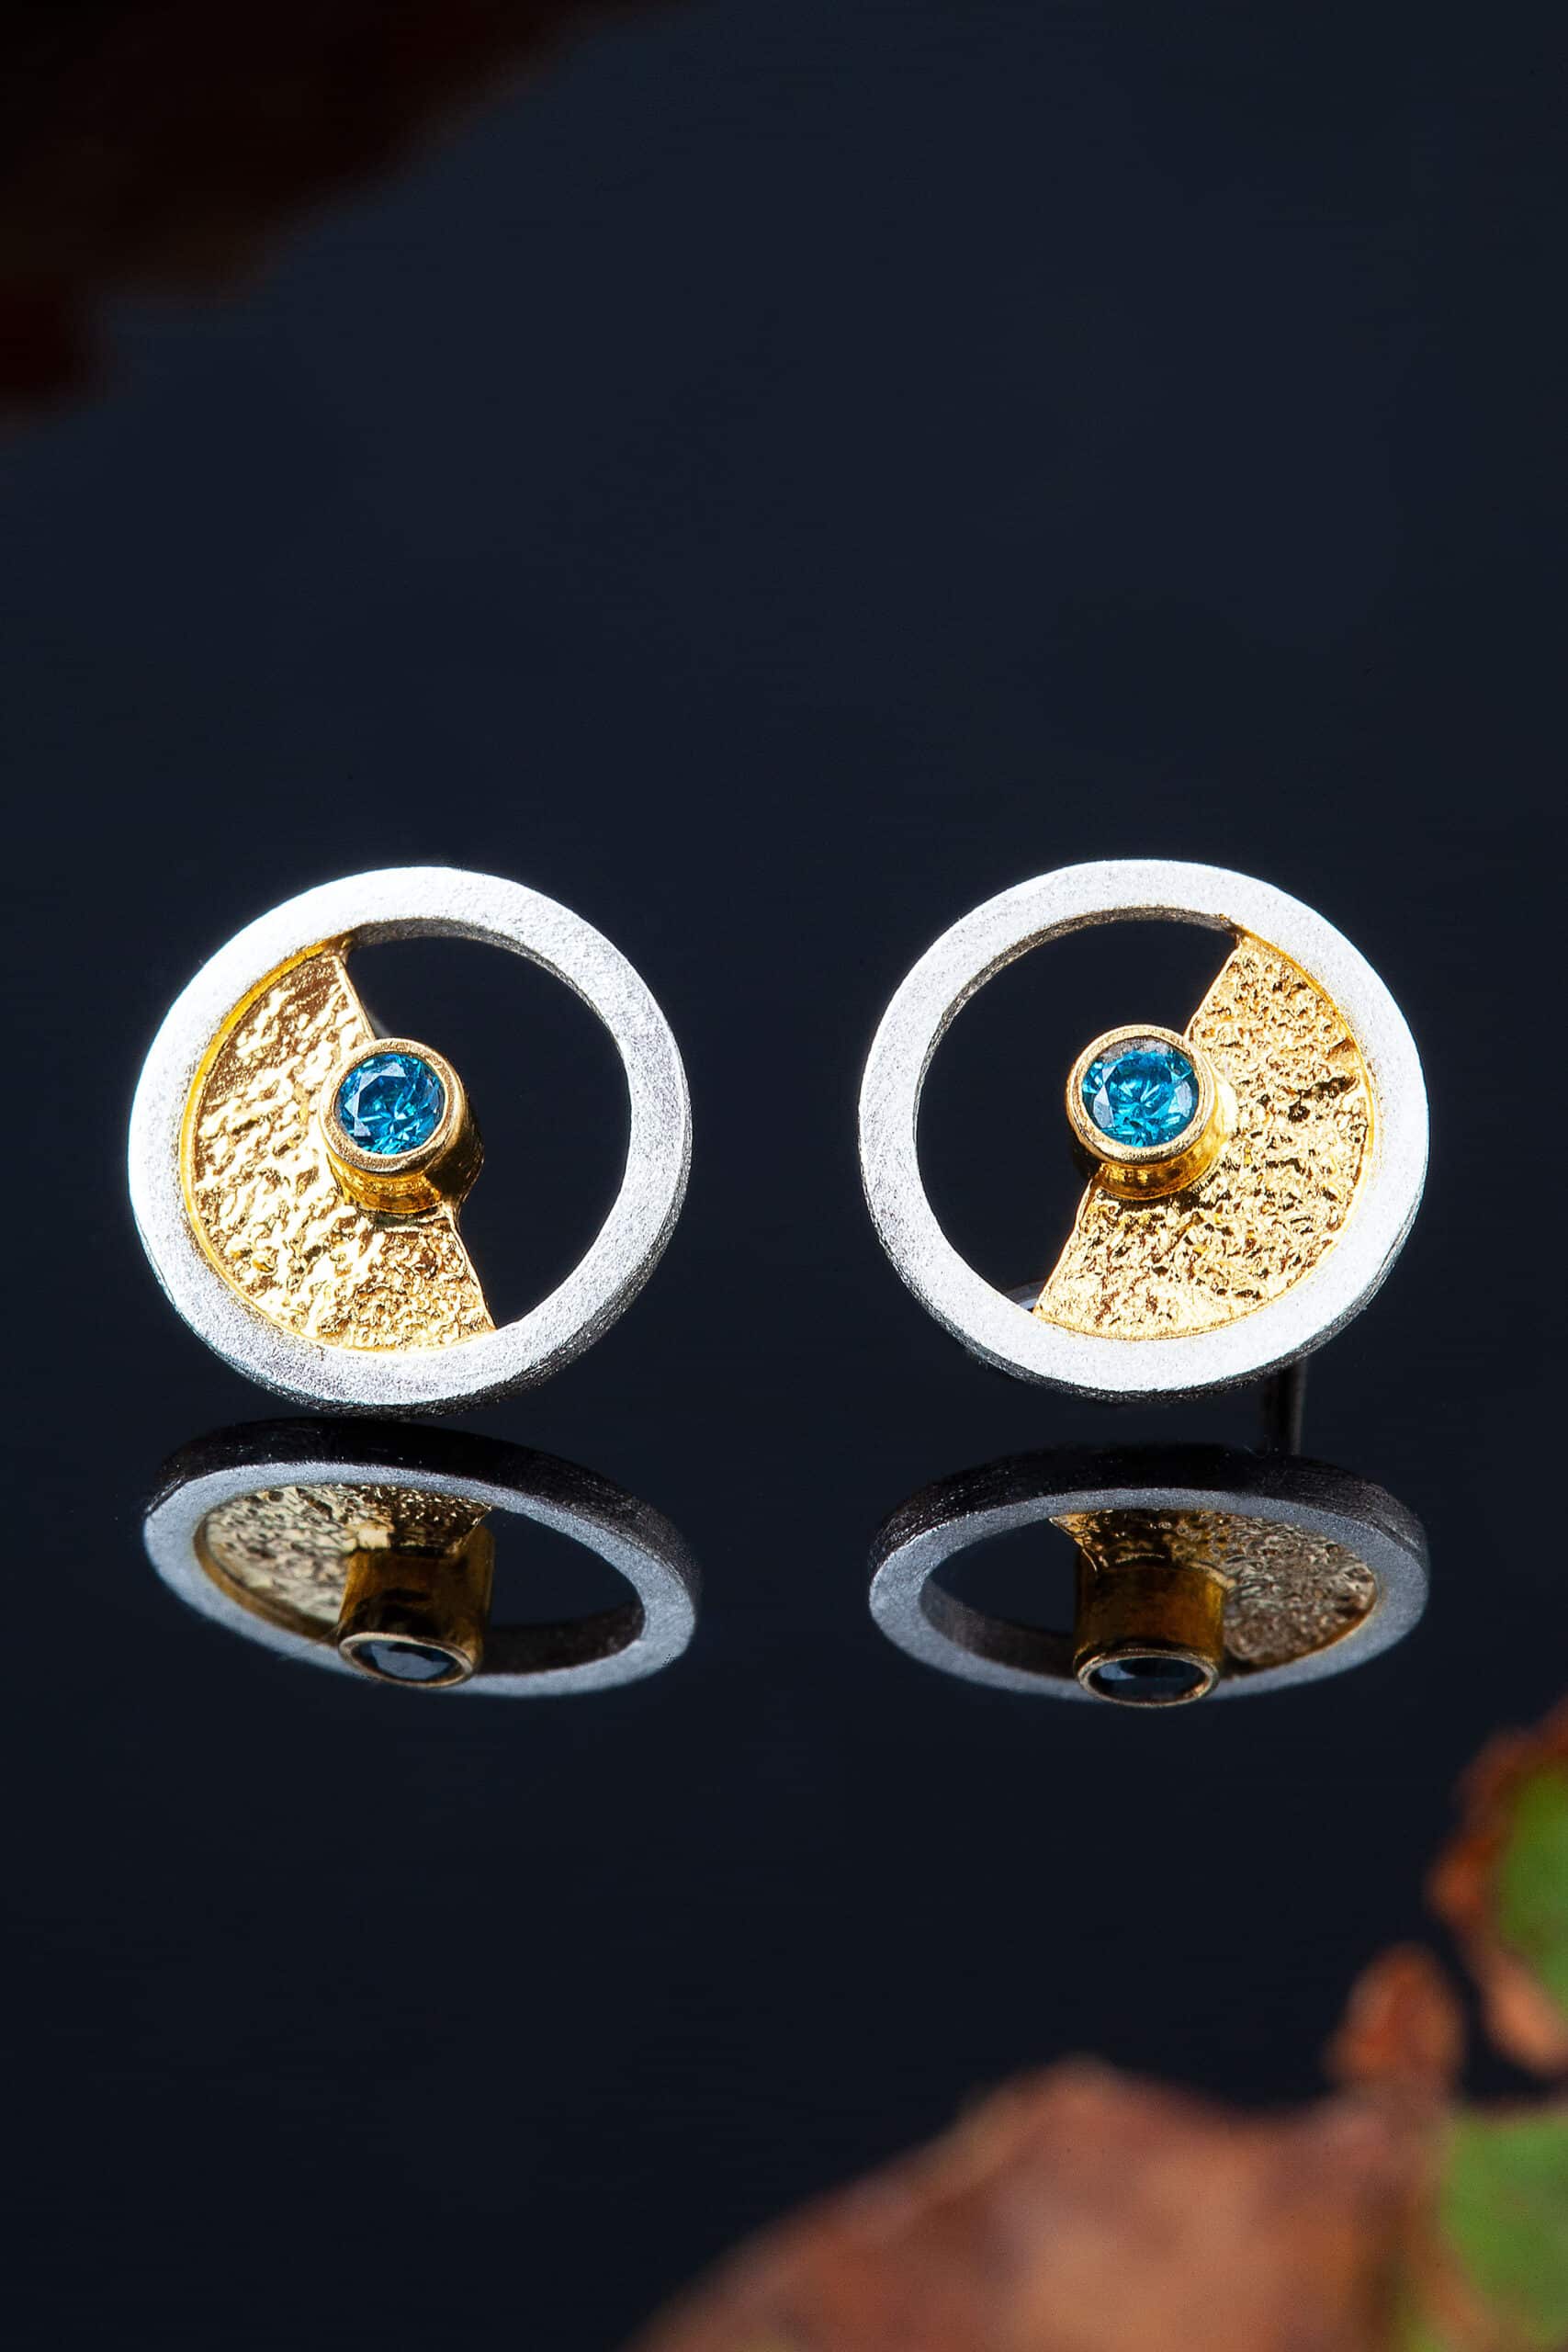 Χειροποίητα κοσμήματα | Κυκλικά ασημένια σκουλαρίκια με επιπλατίνωση και επίχρυσες λεπτομέρειες, συνδυασμένα με ζιργκόν gallery 2